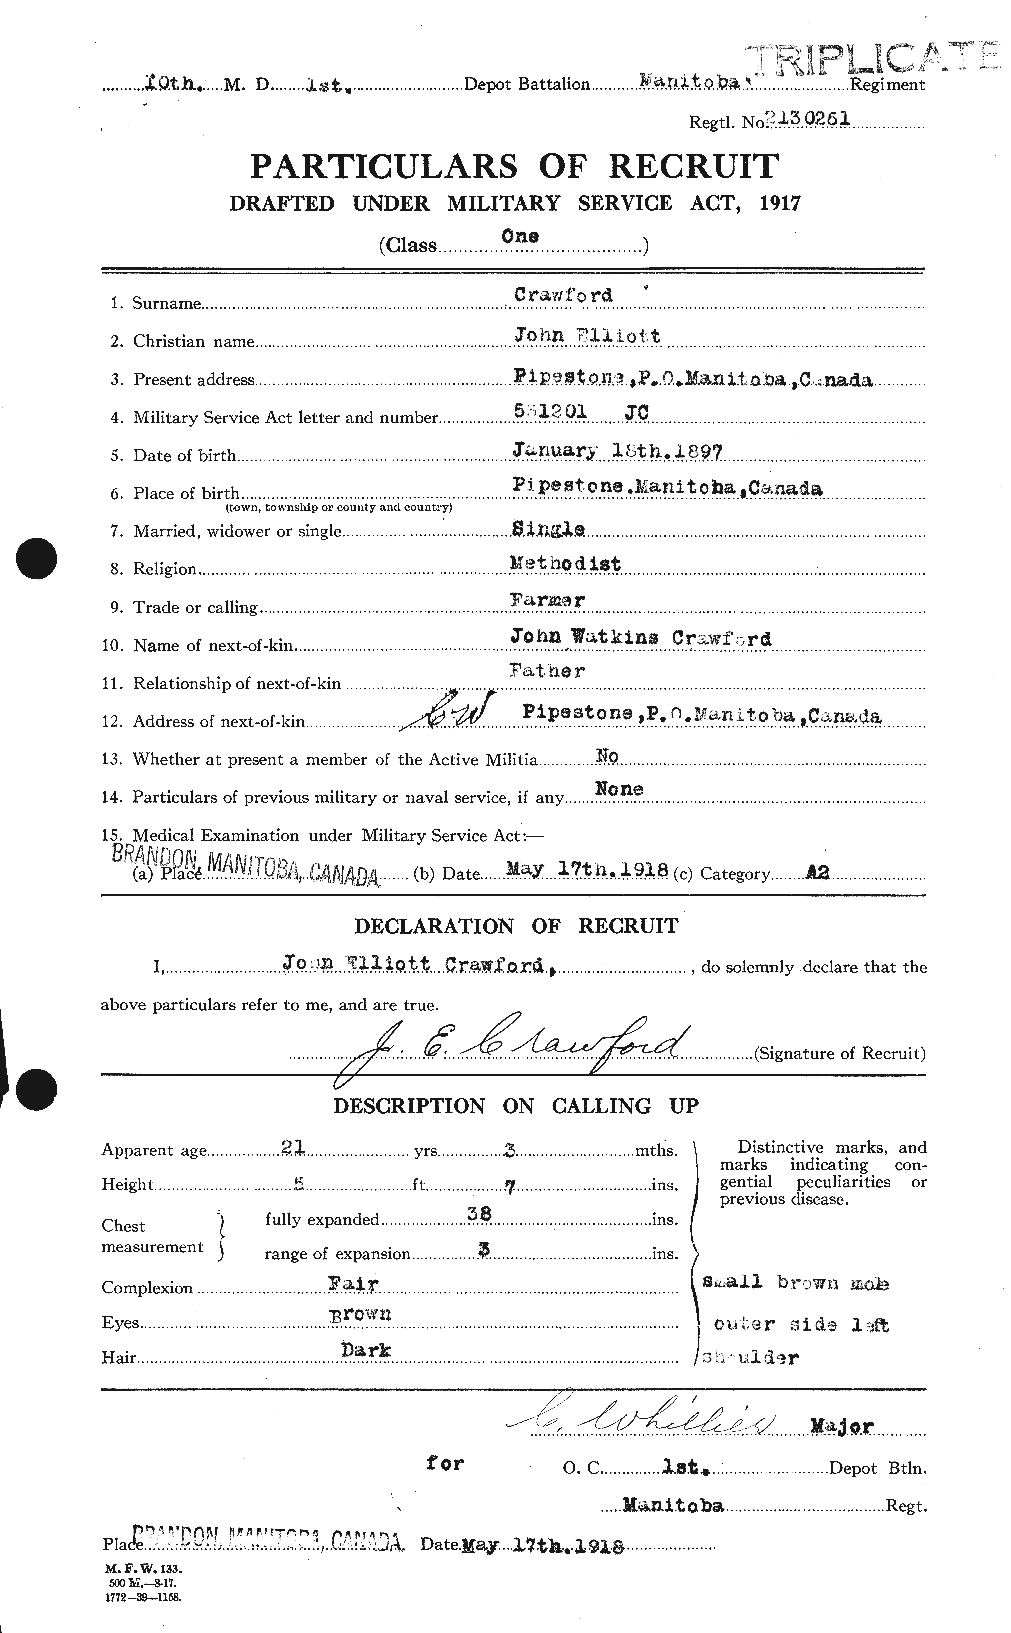 Dossiers du Personnel de la Première Guerre mondiale - CEC 062428a